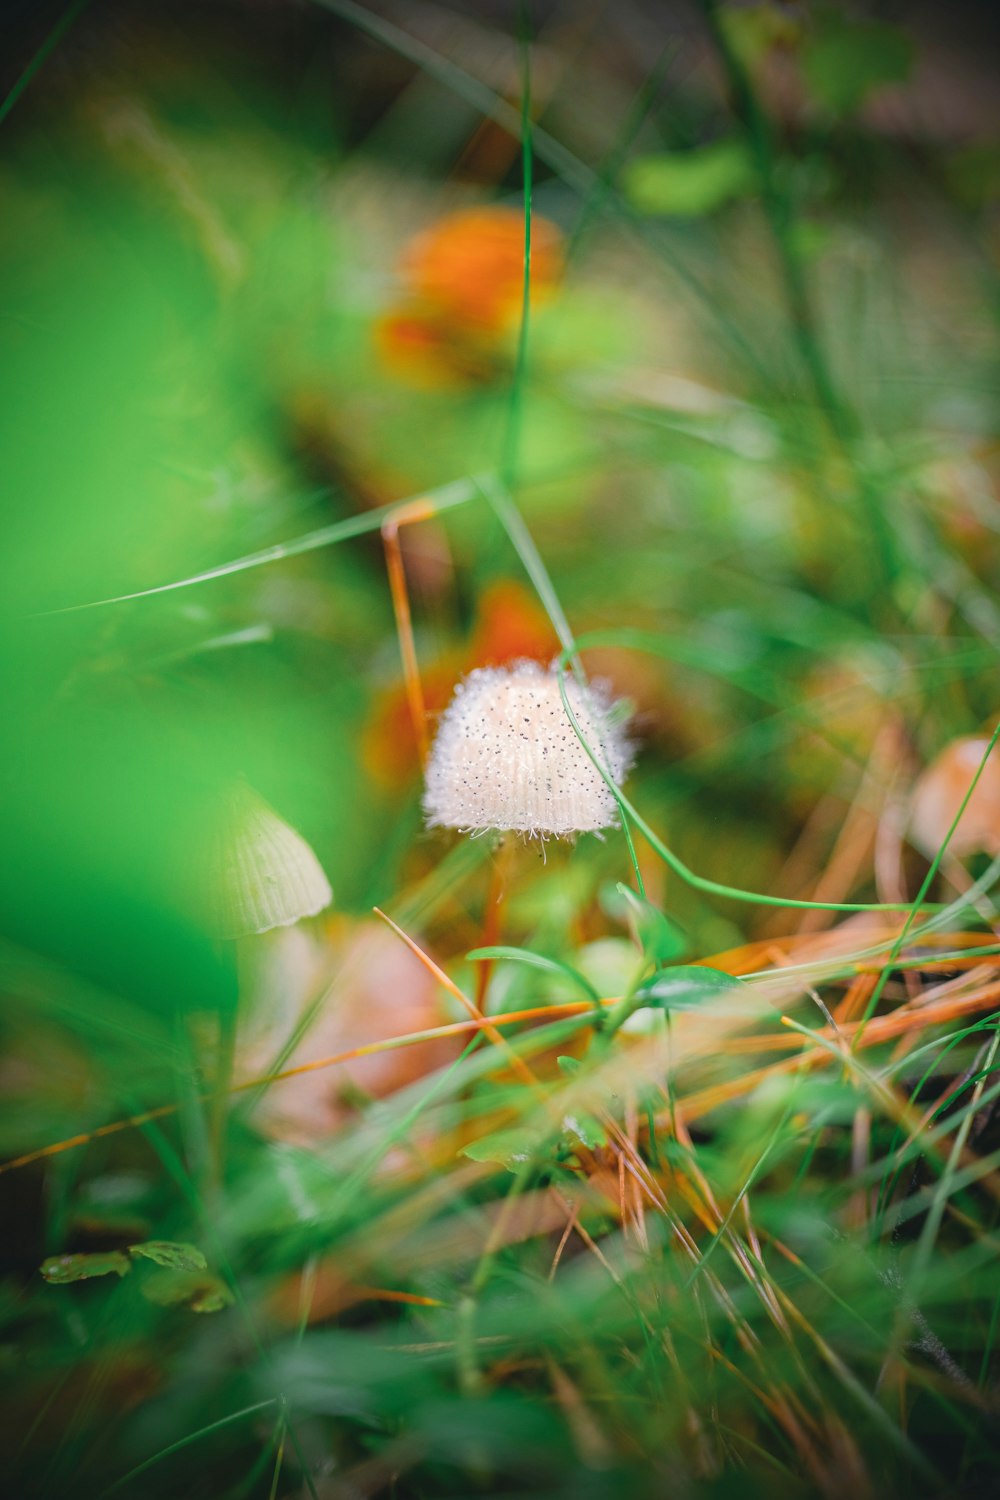 une petite fleur blanche assise au sommet d’un champ verdoyant